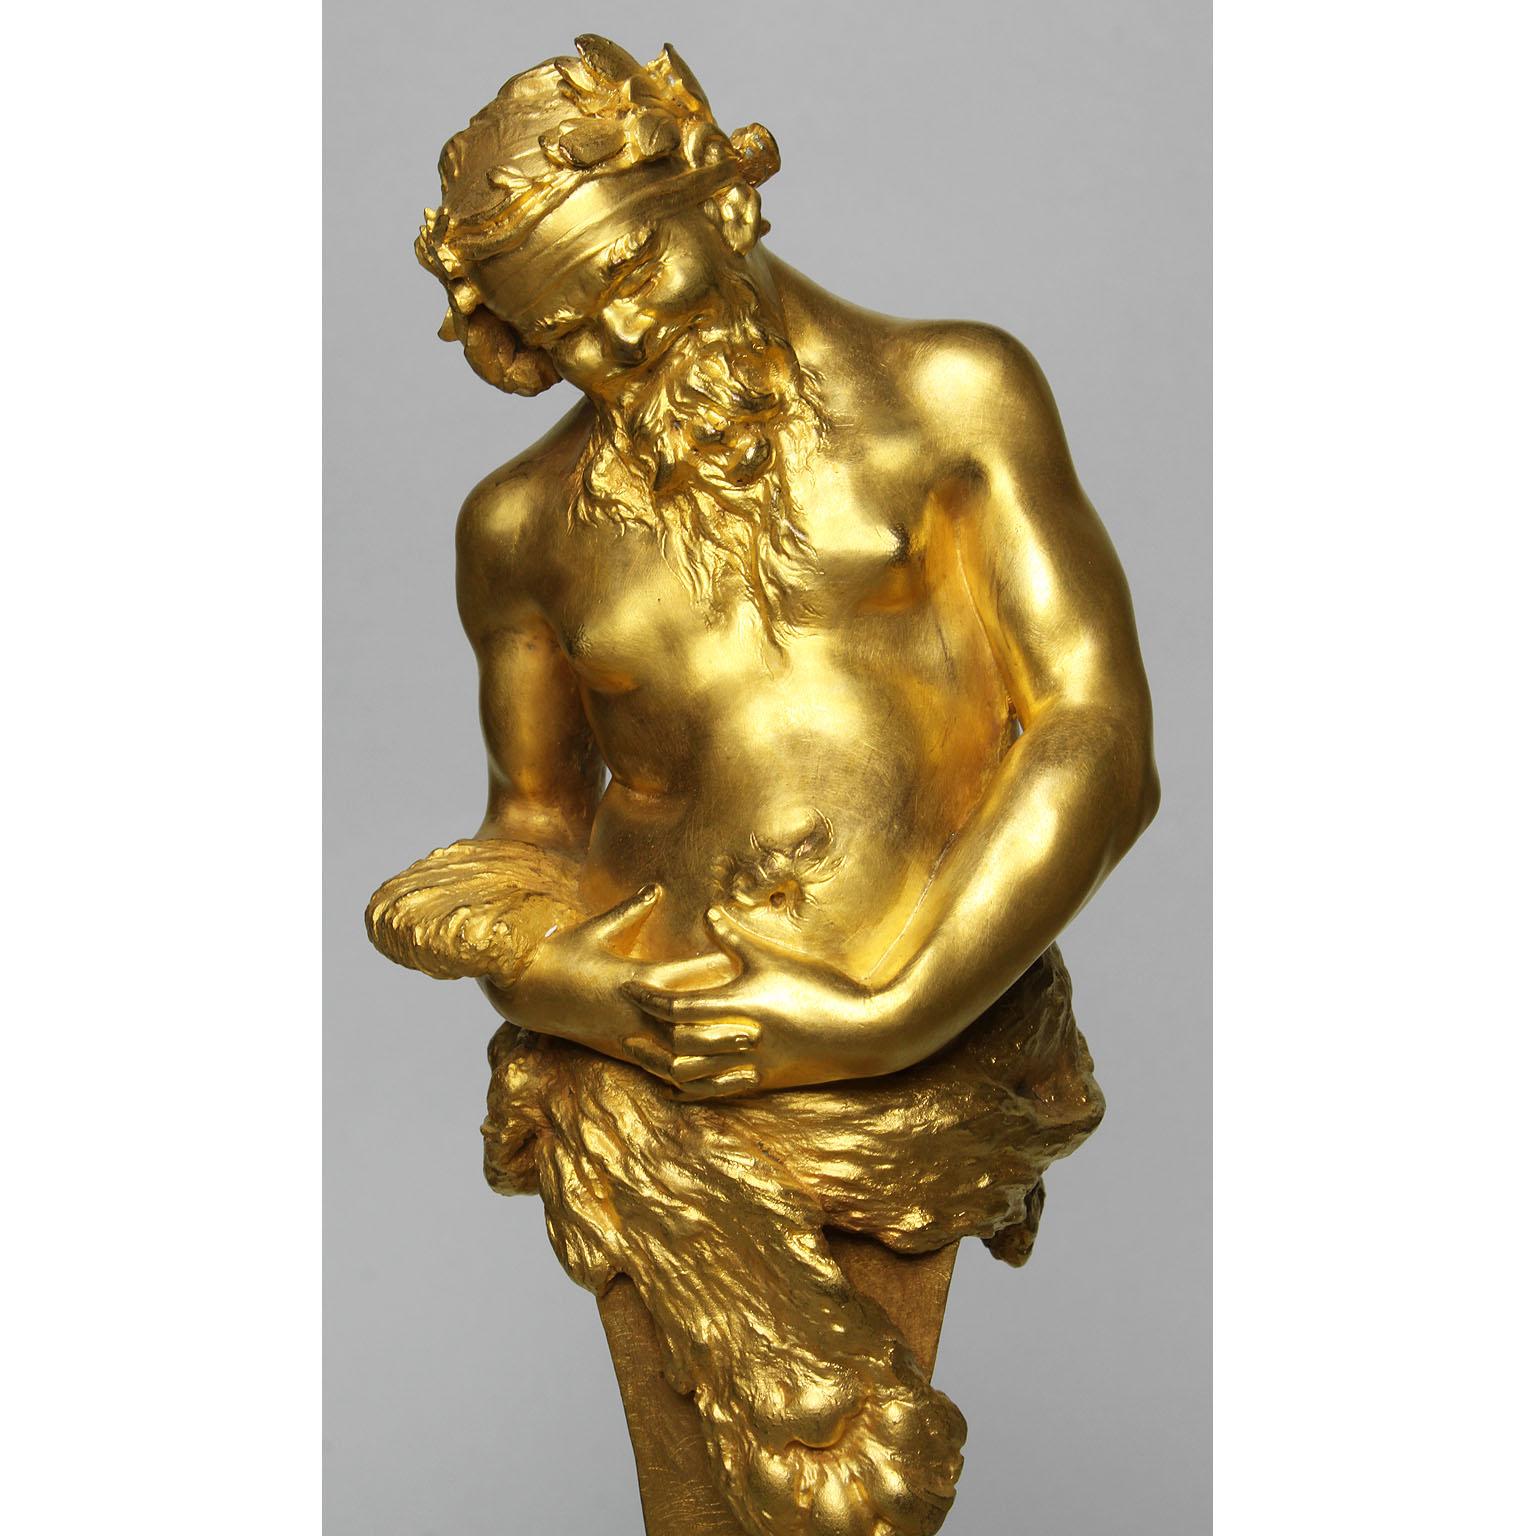 Cipri Adolf Bermann (Deutscher, 1862-1942), eine sehr schöne Miniaturfigur aus vergoldeter Bronze aus dem 19. Jahrhundert, die Bacchus Herm, auch bekannt als Dionysos, den Gott der Weinlese, der Weinherstellung und des Weins in der griechischen